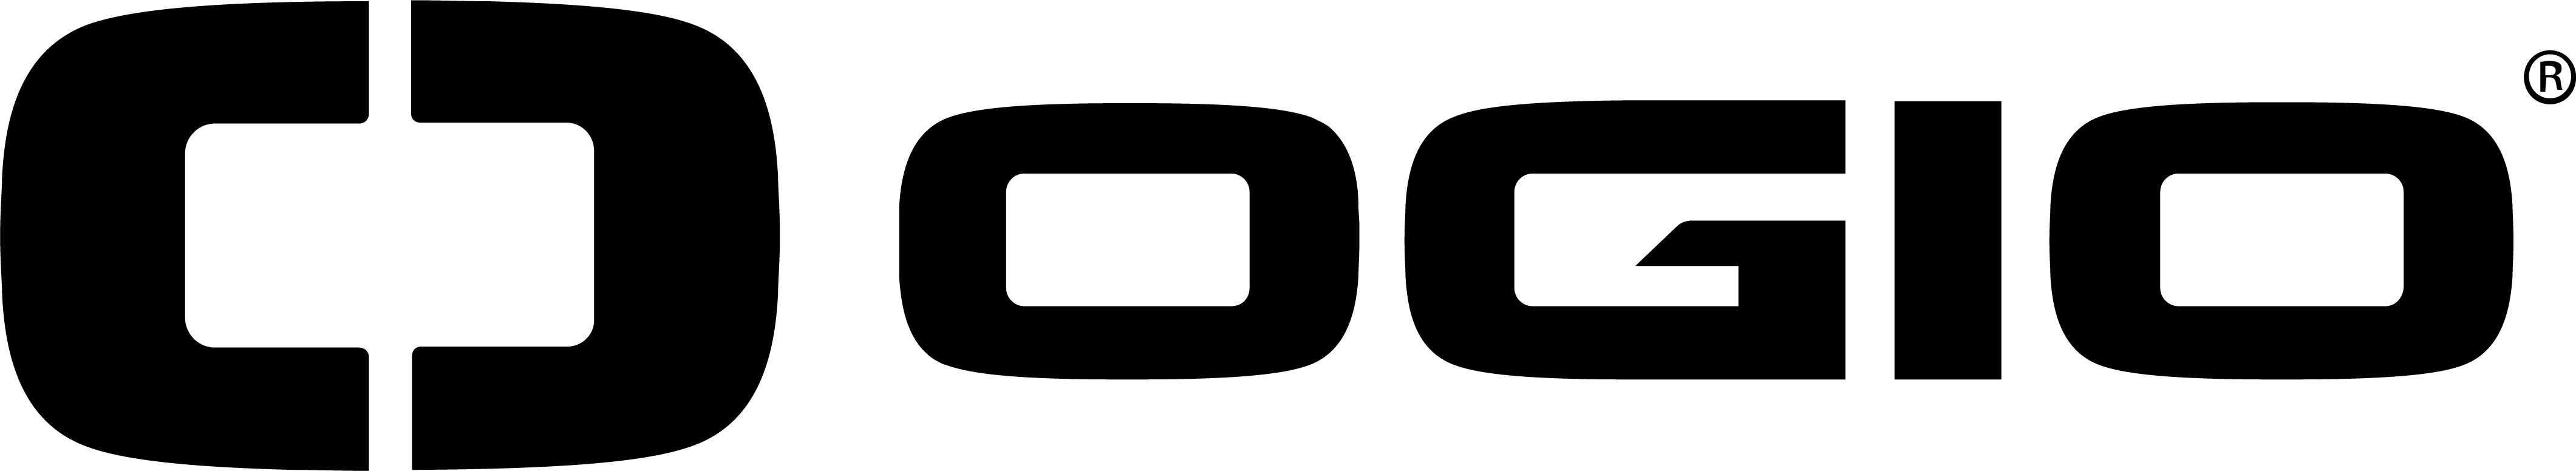 The Ogio brand logo